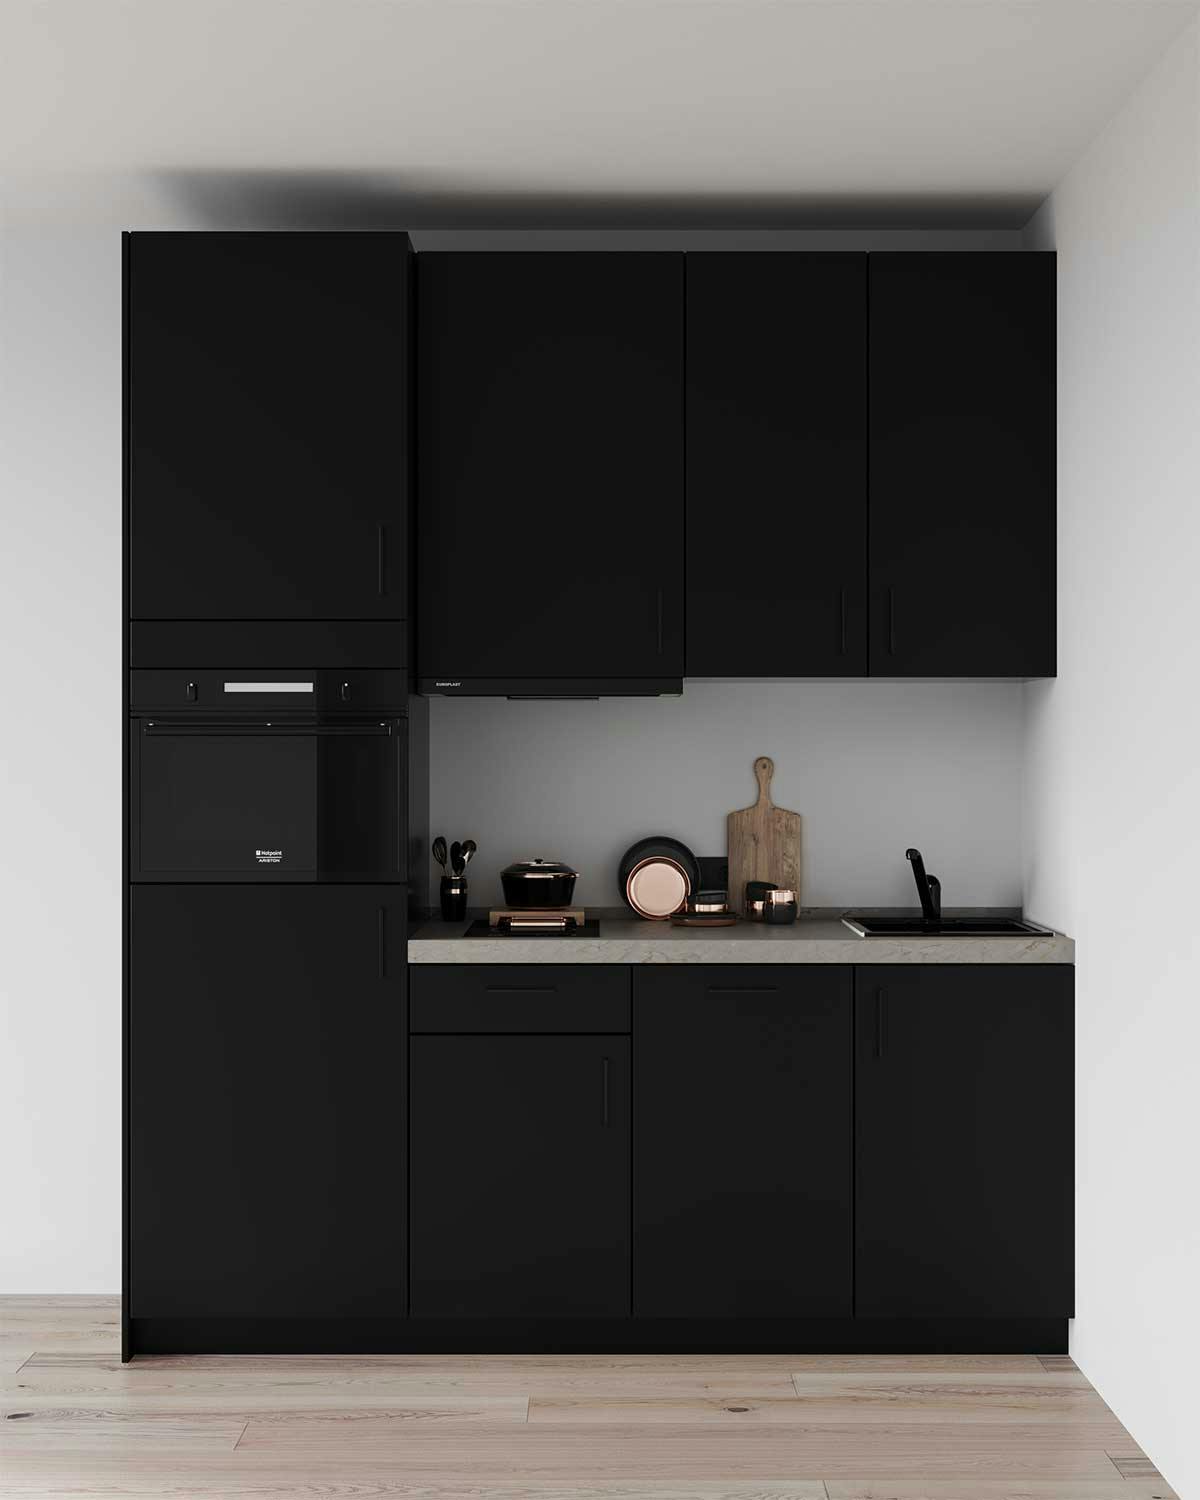 3D Möbelvisualisierung der schwarzen Küche in einer Wohnung in Düsseldorf, Deutschland.